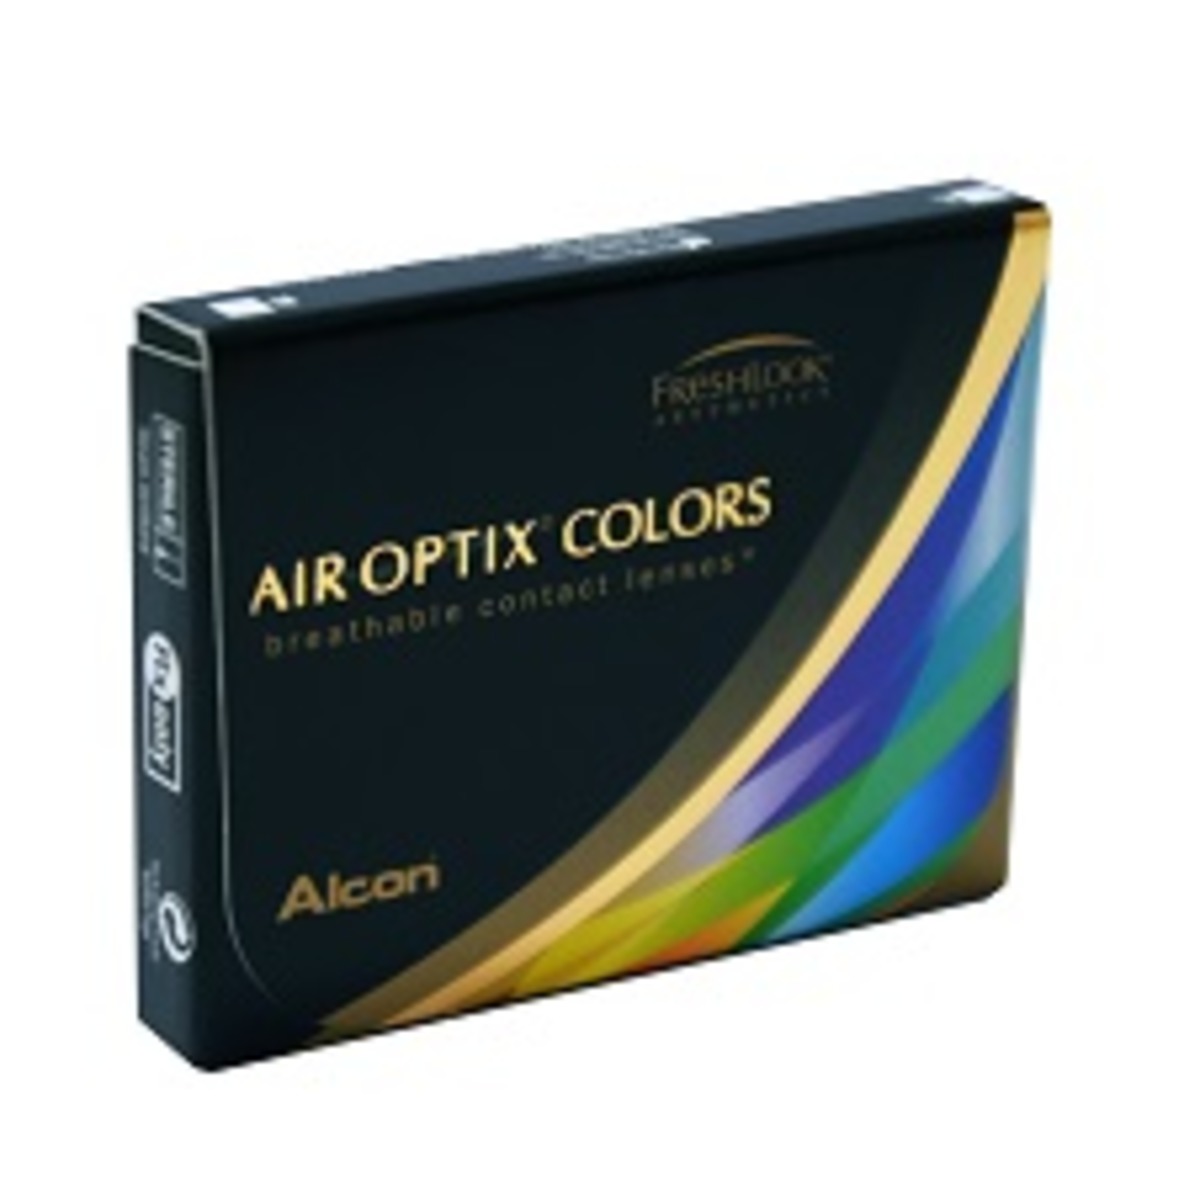 Air Optix Colors Ambre (Honey)